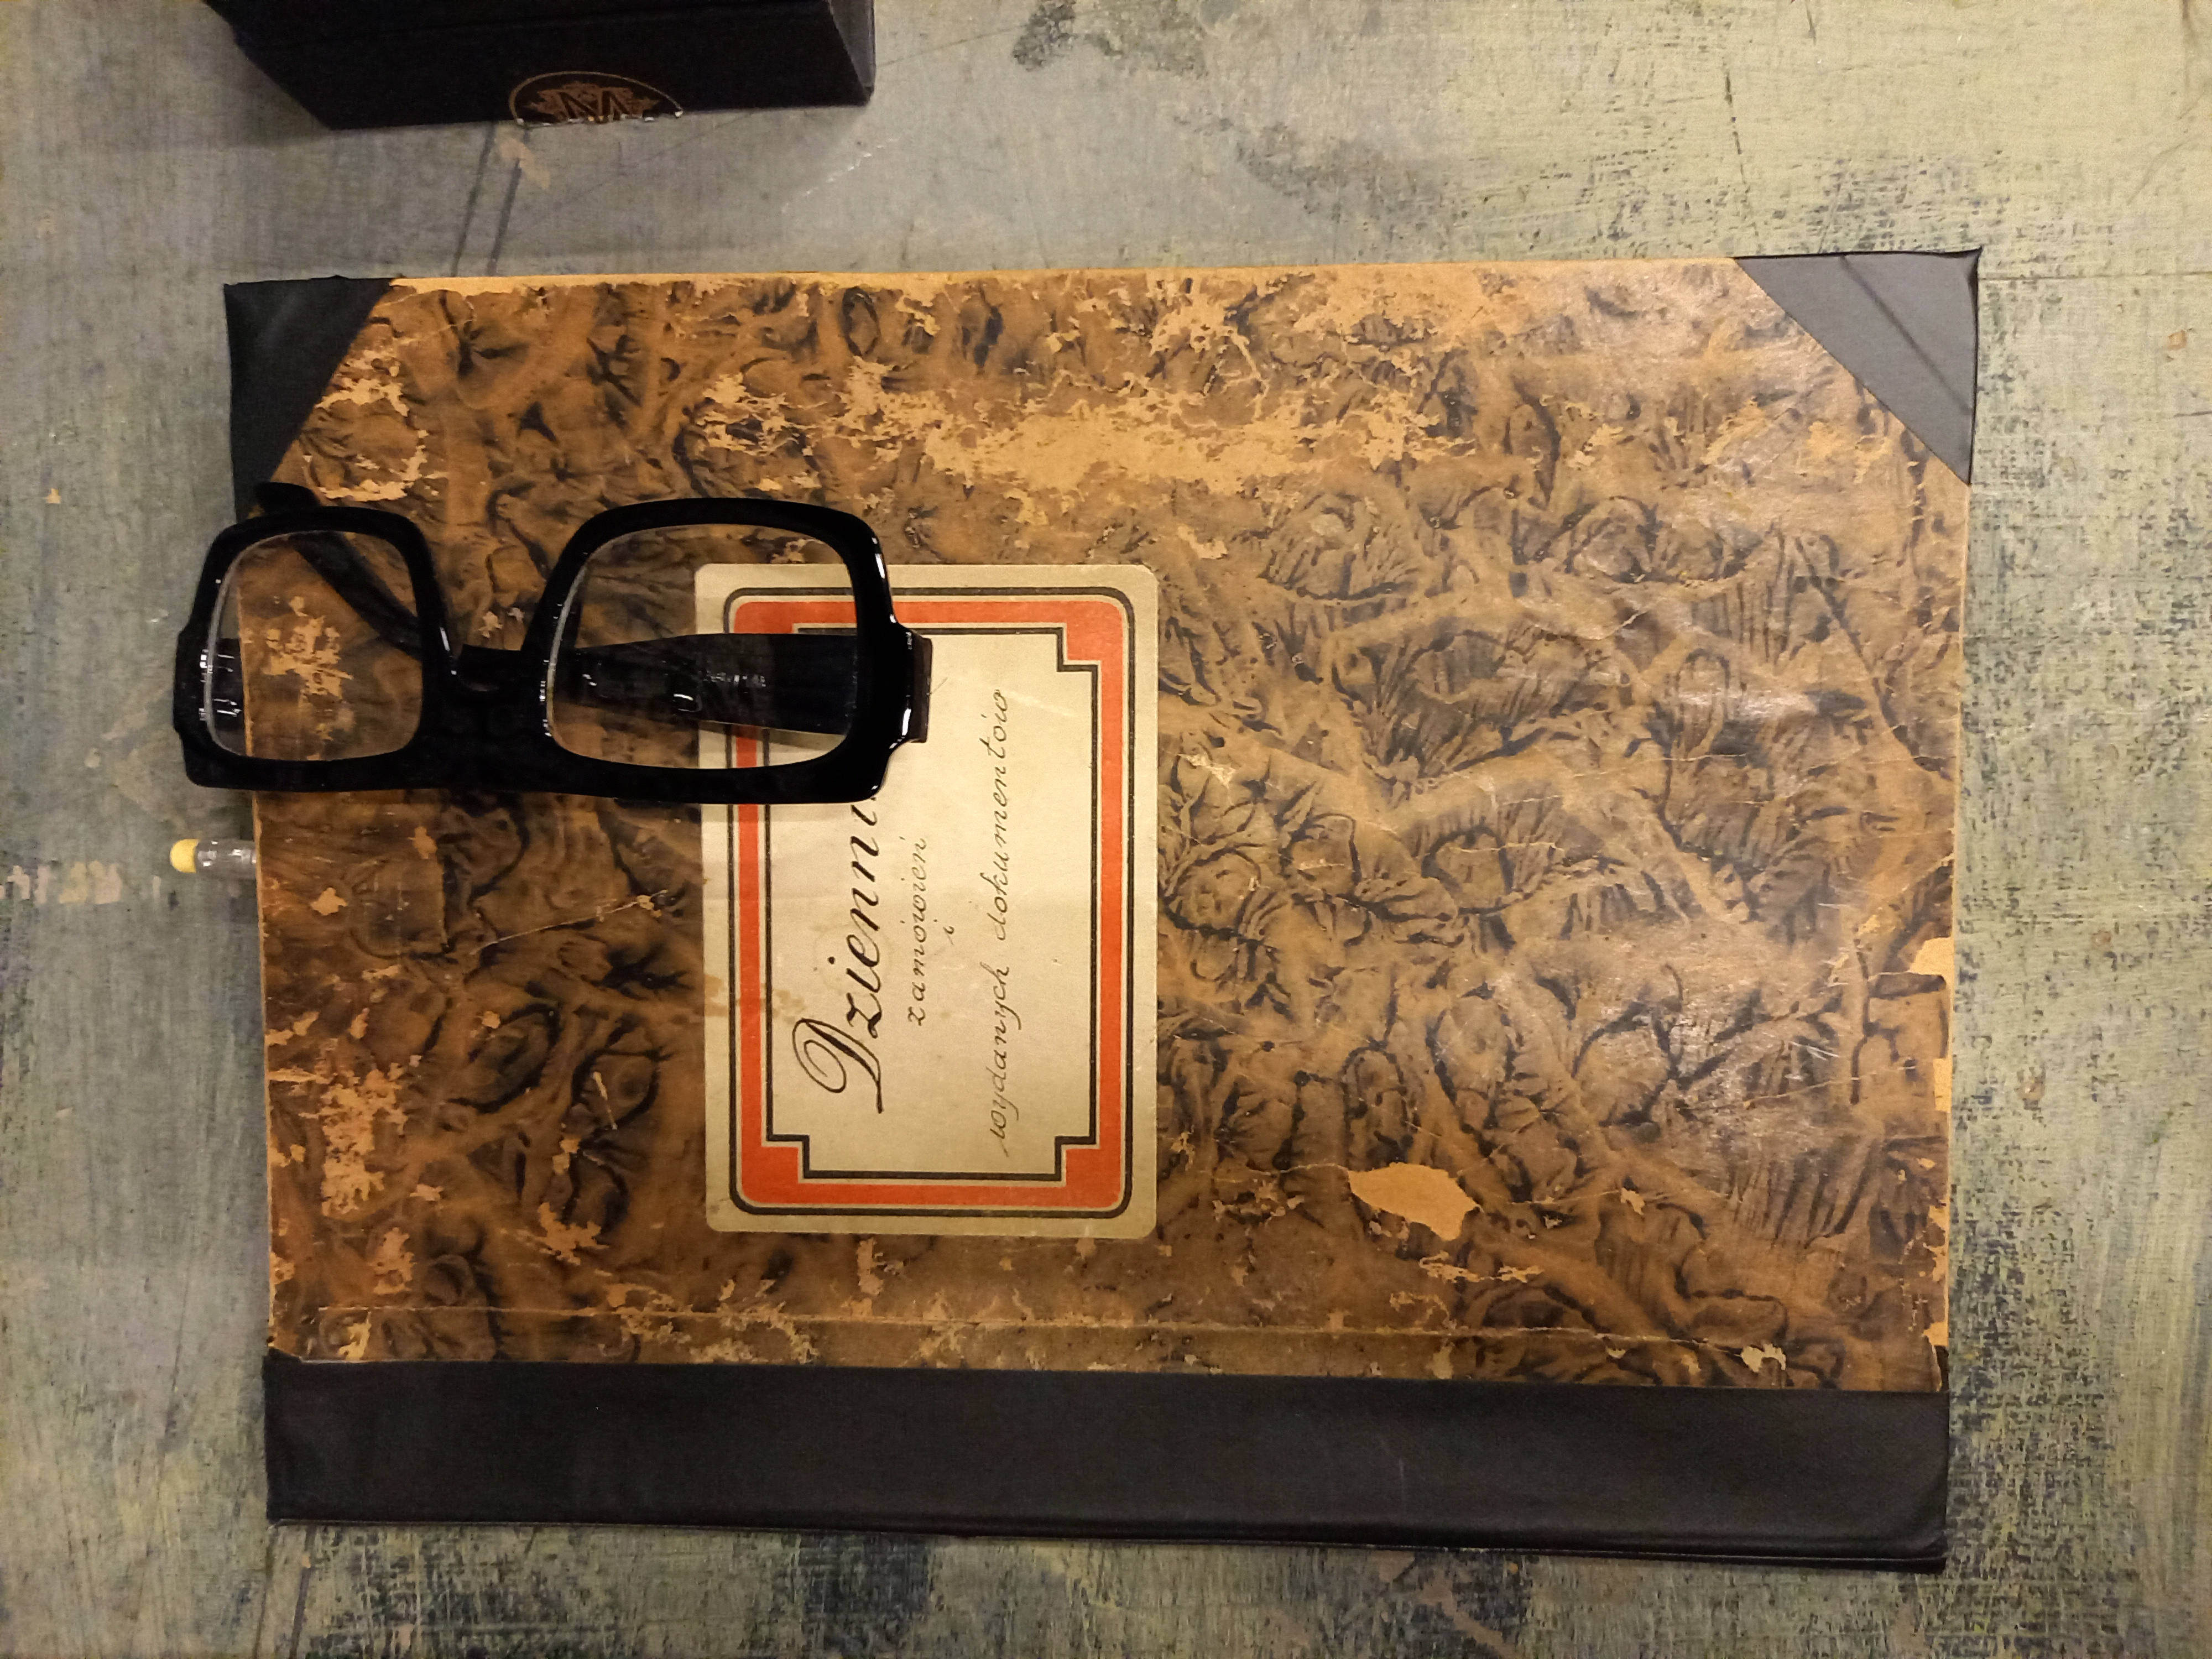 Jeden z rekwizytów: notes Doktora Strawińskiego, w brązowo-beżowej marmurkowej oprawie z nalepką o treści Dziennik zamówień i wydanych dokumentów. Na nim leżą okulary w grubej czarnej oprawie.